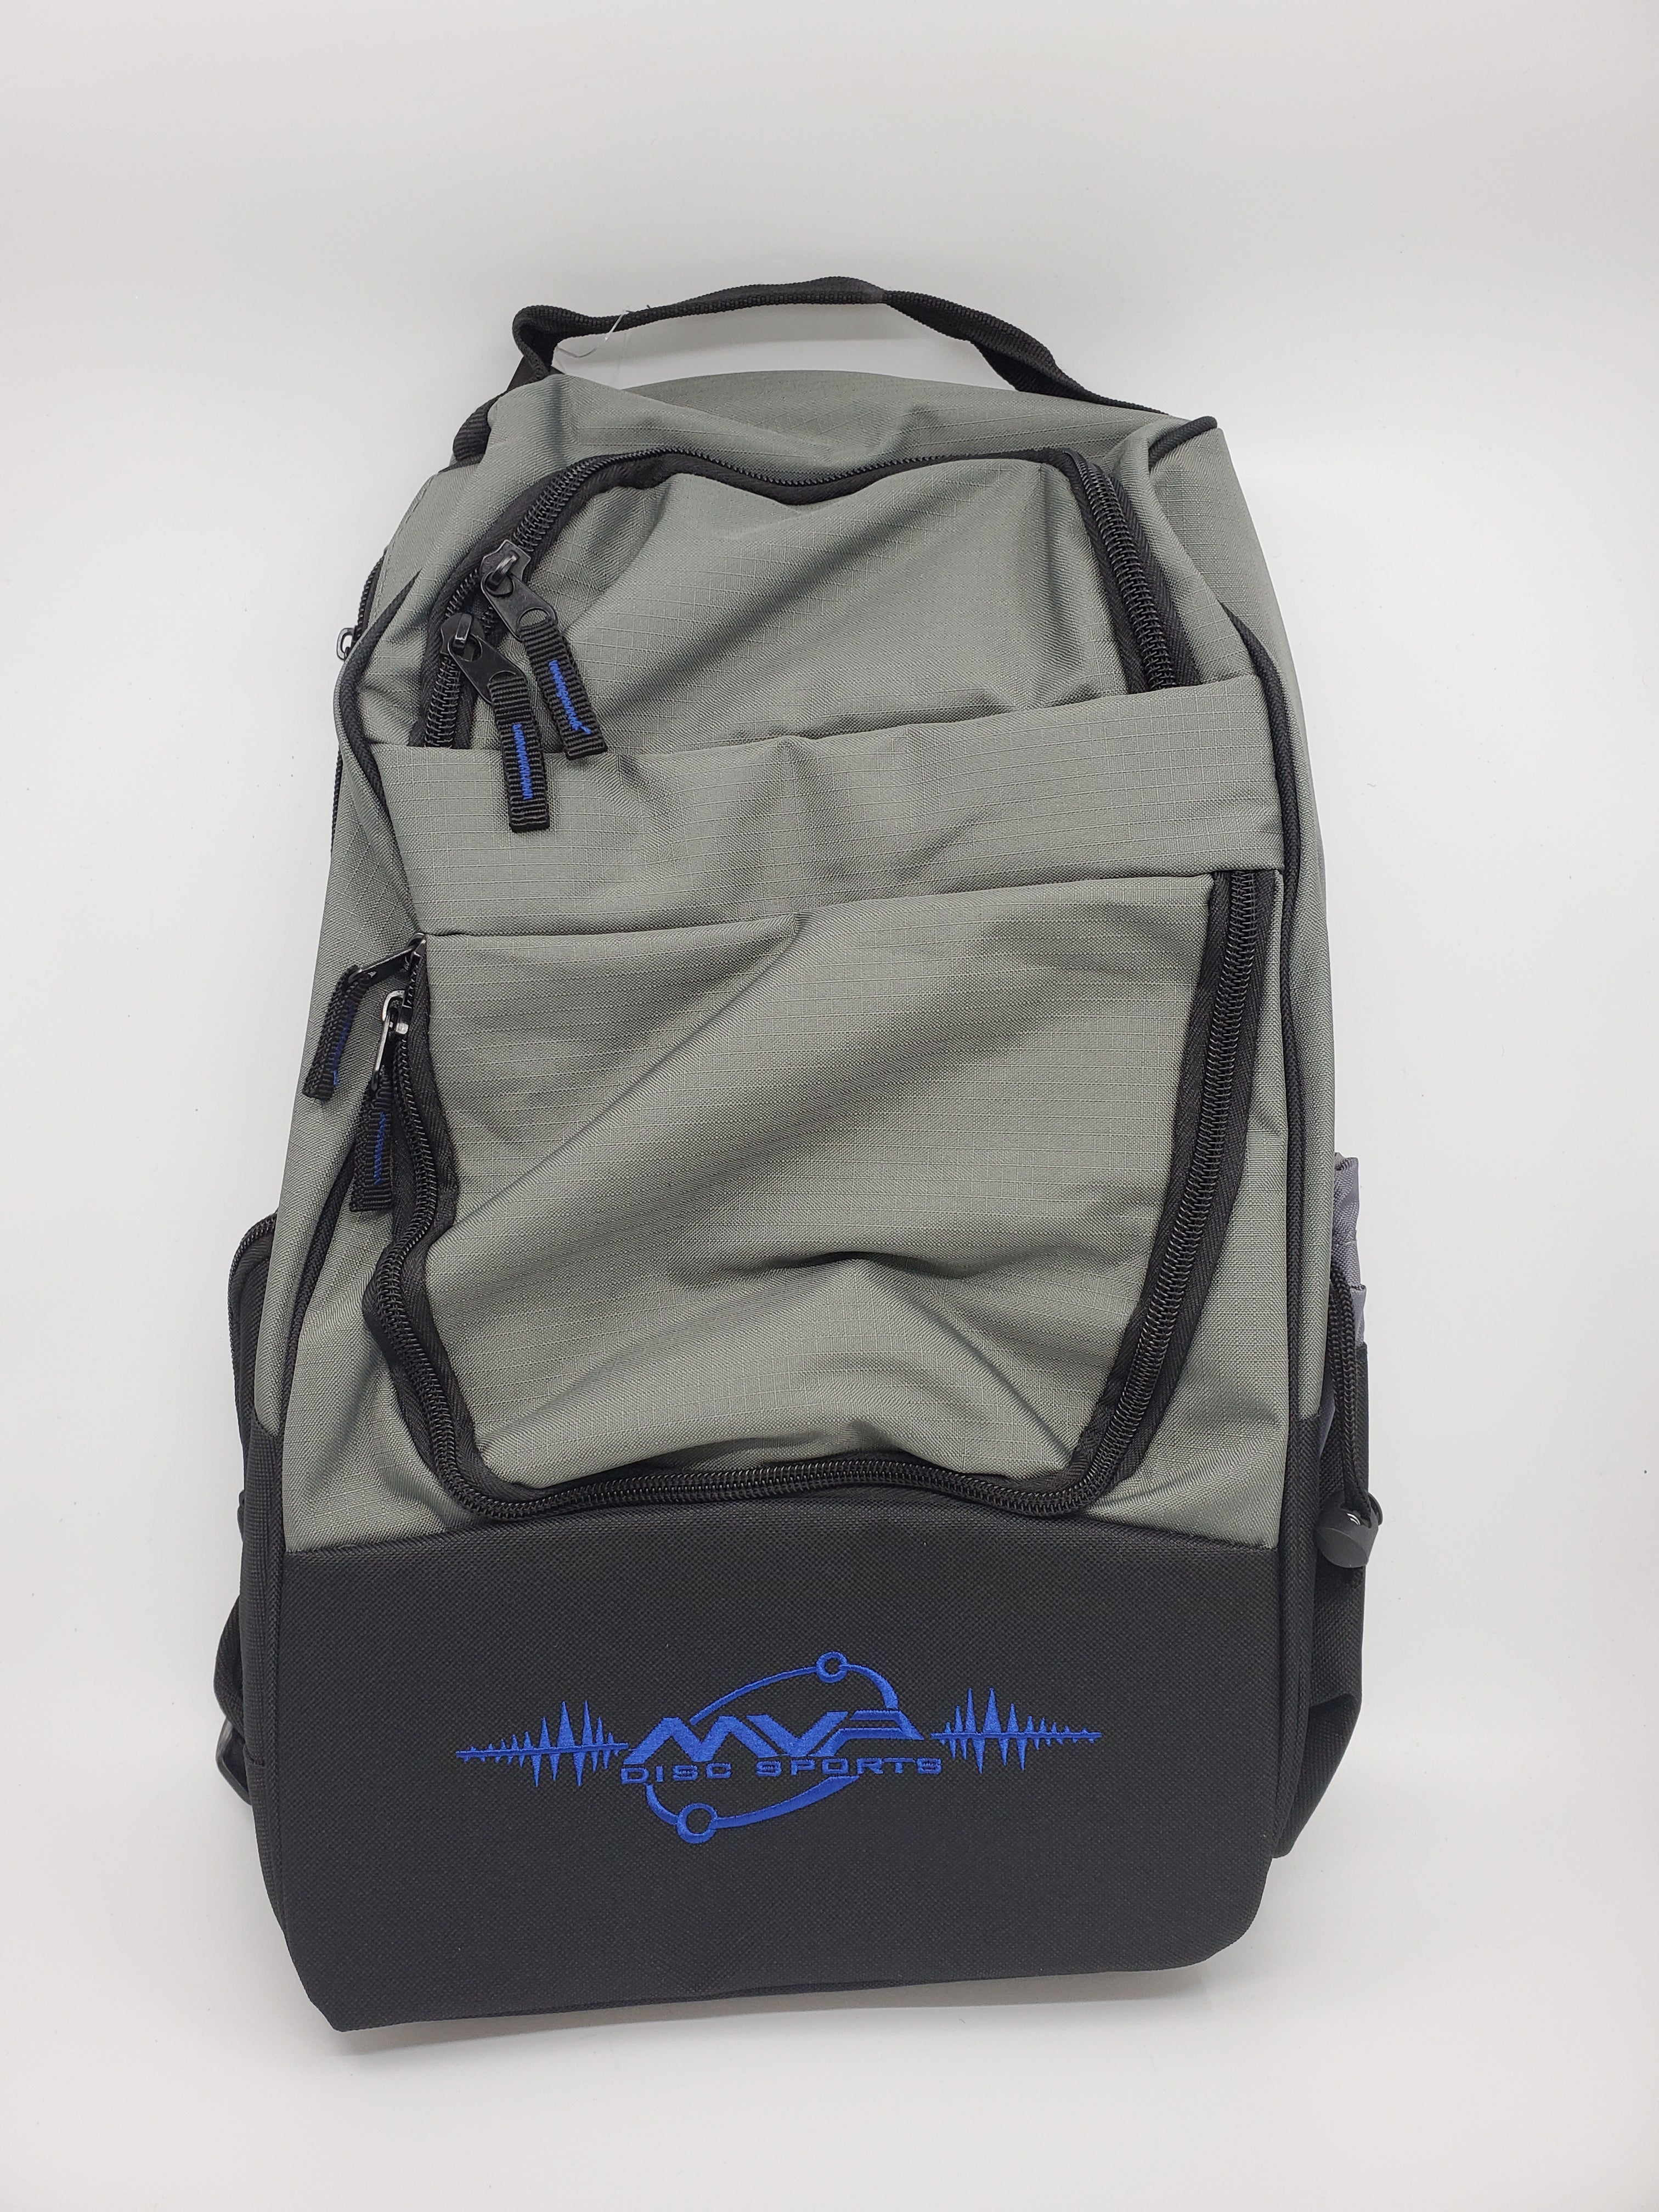 MVP Shuttle Starter Backpack Bag – Hazy Shade